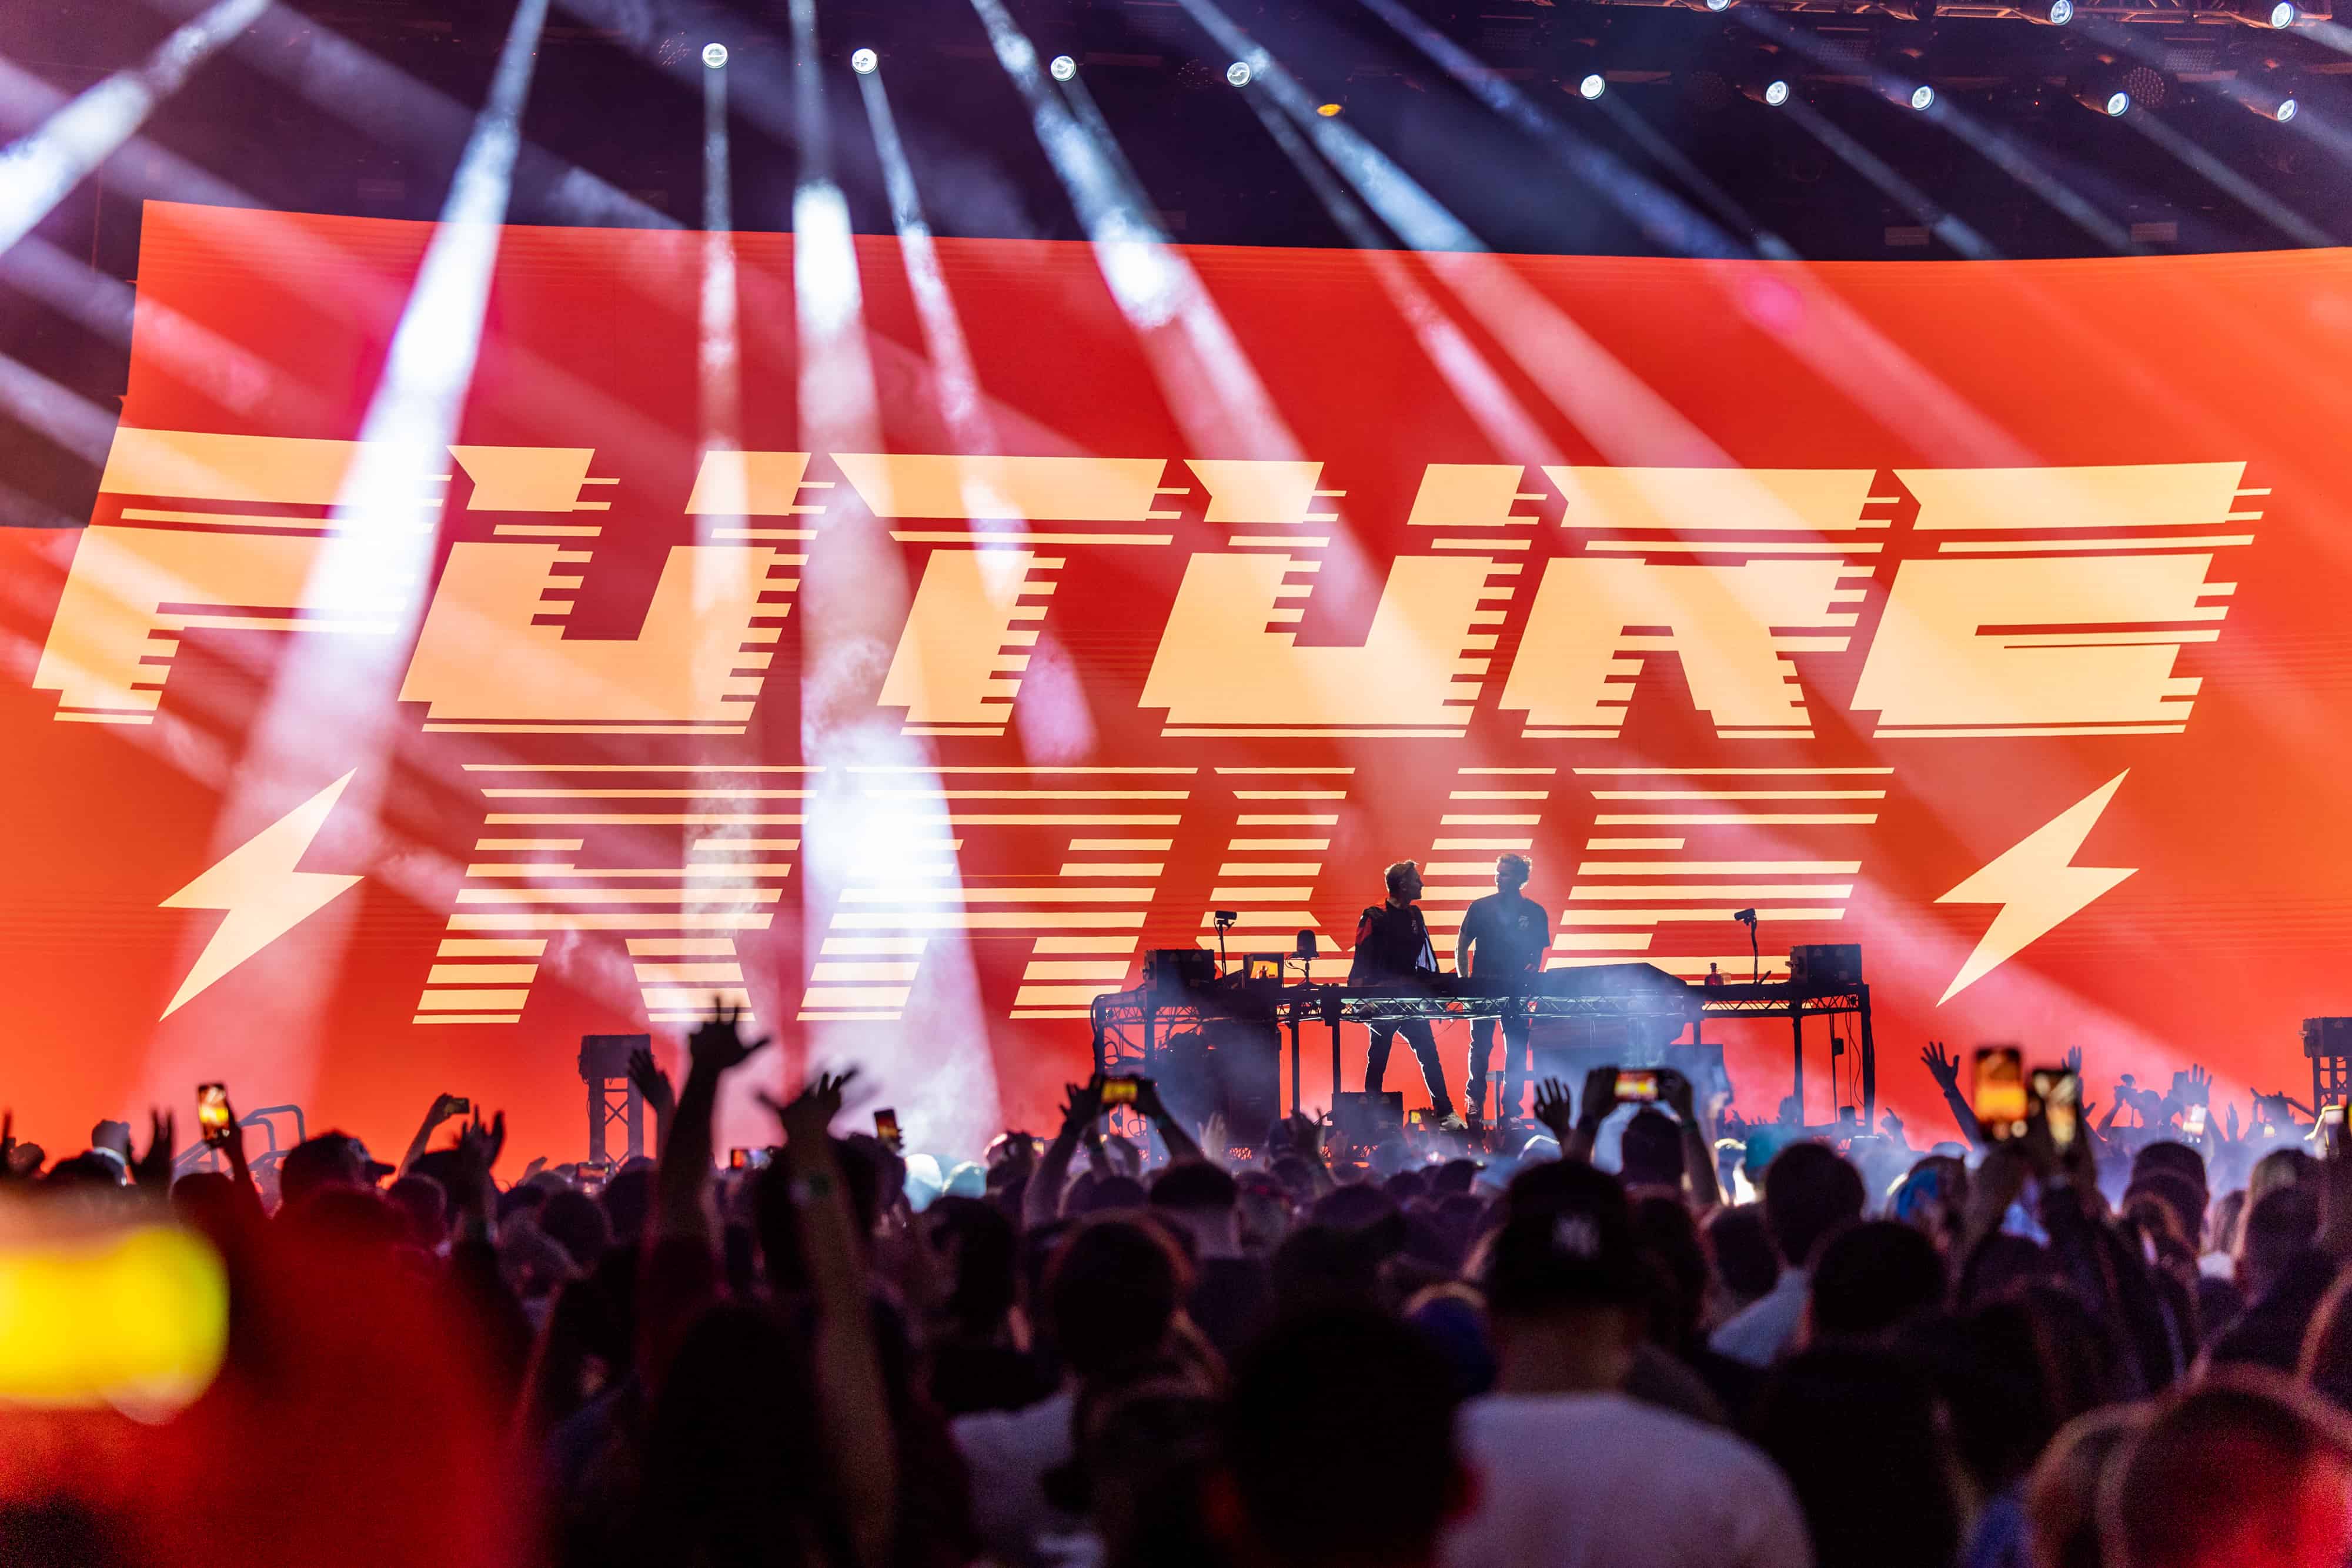 David Guetta & Morten pres. Future Rave 2